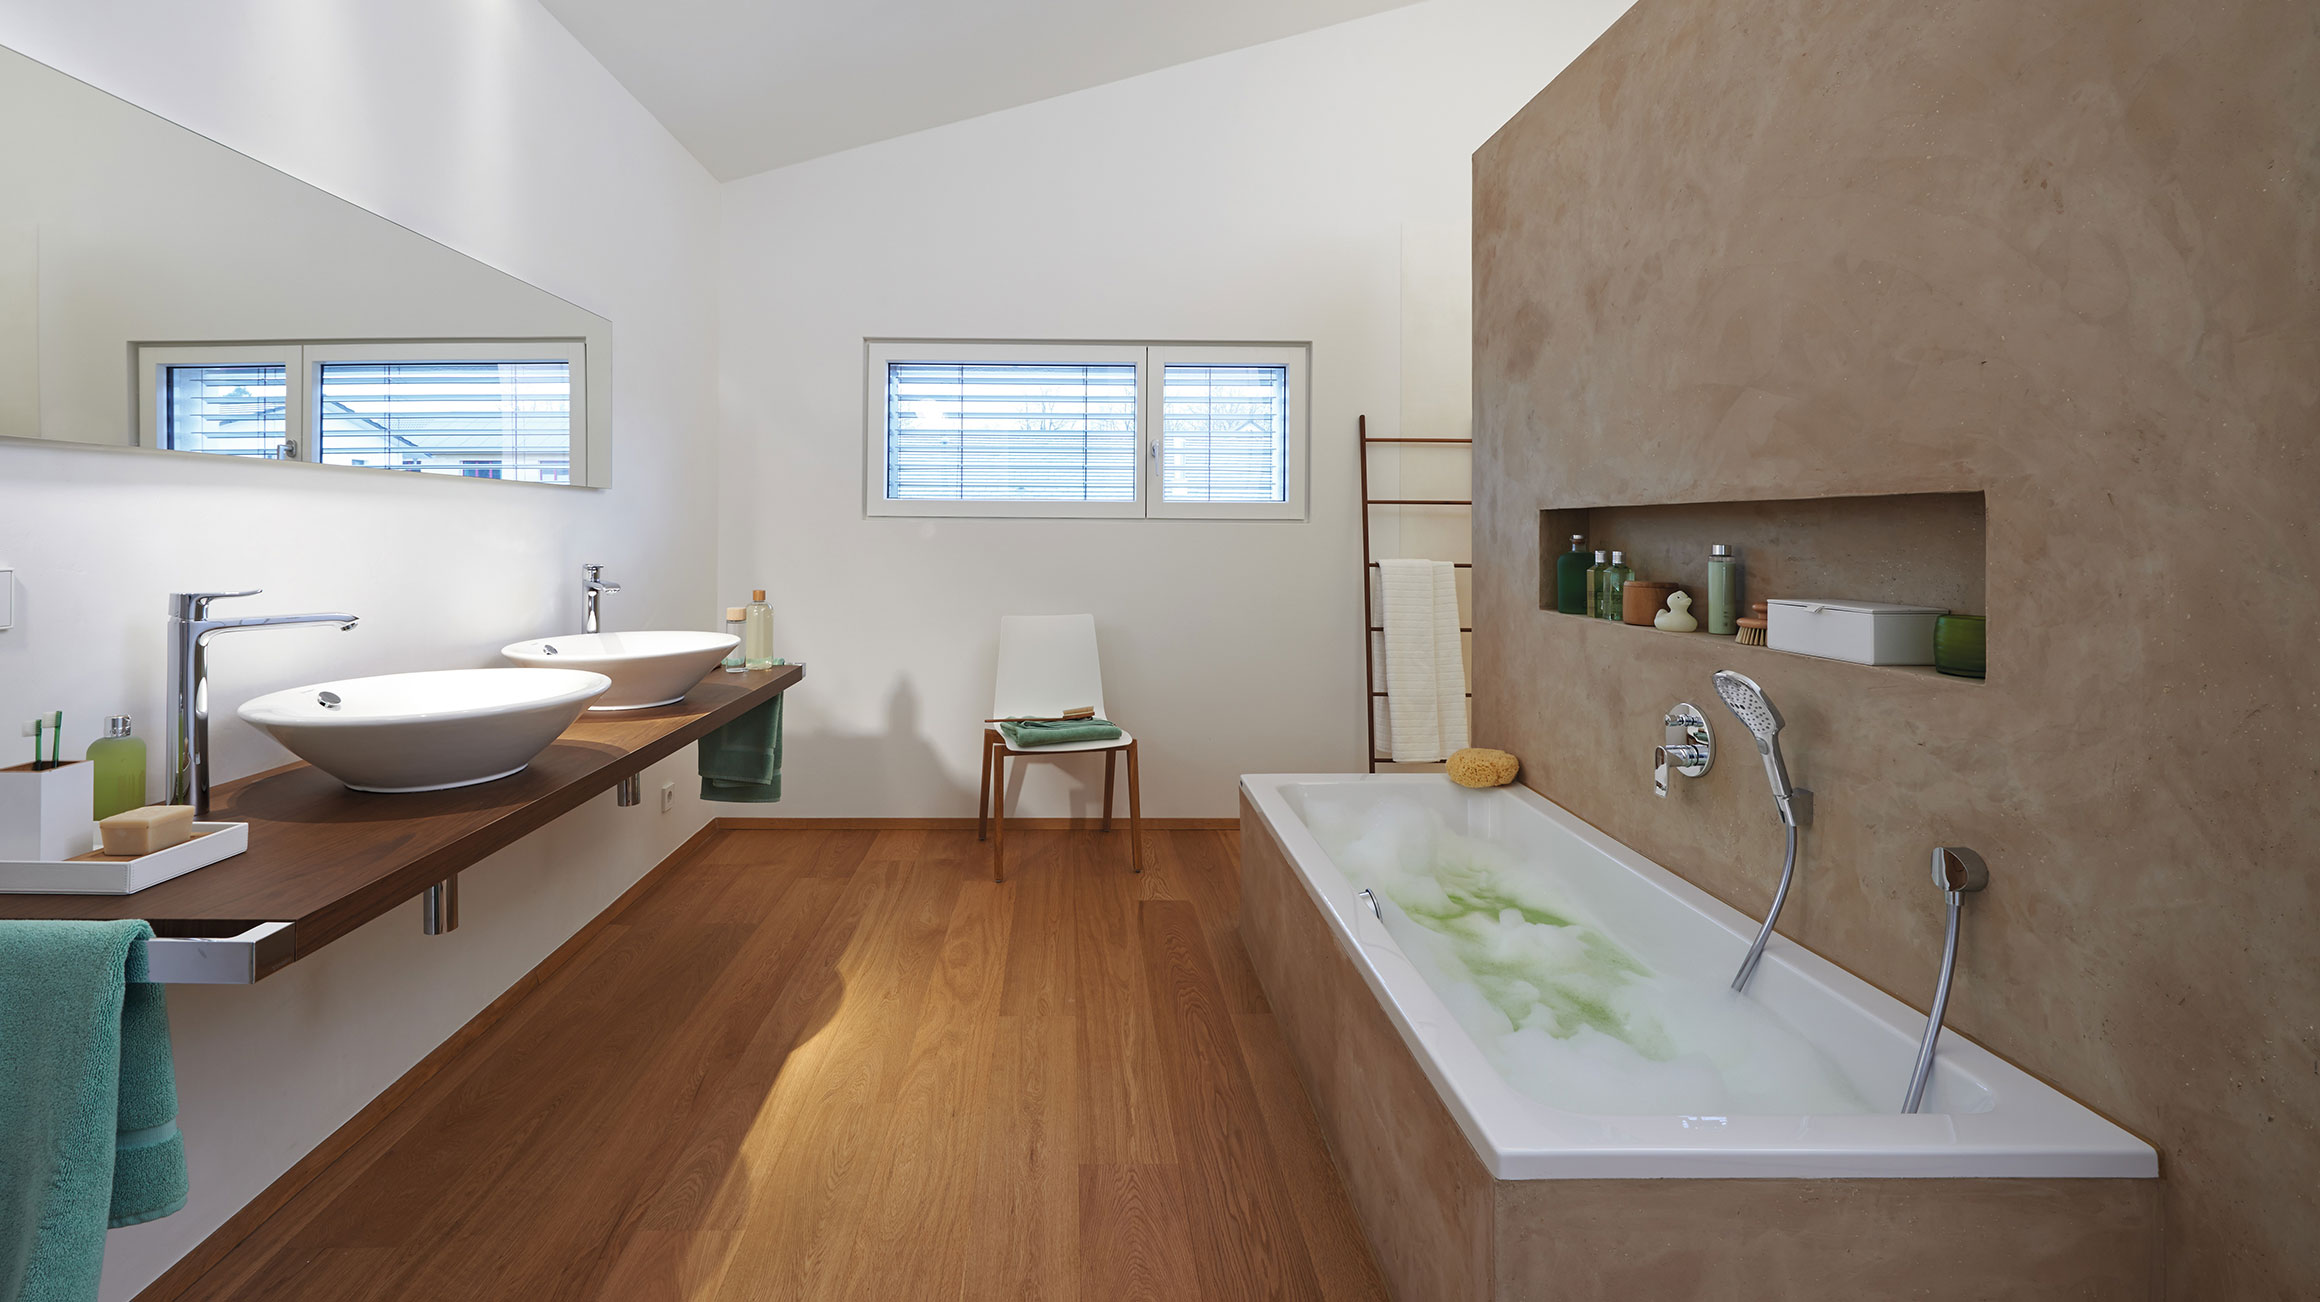 Badezimmer In Skandinavischem Stil Modern Einrichten